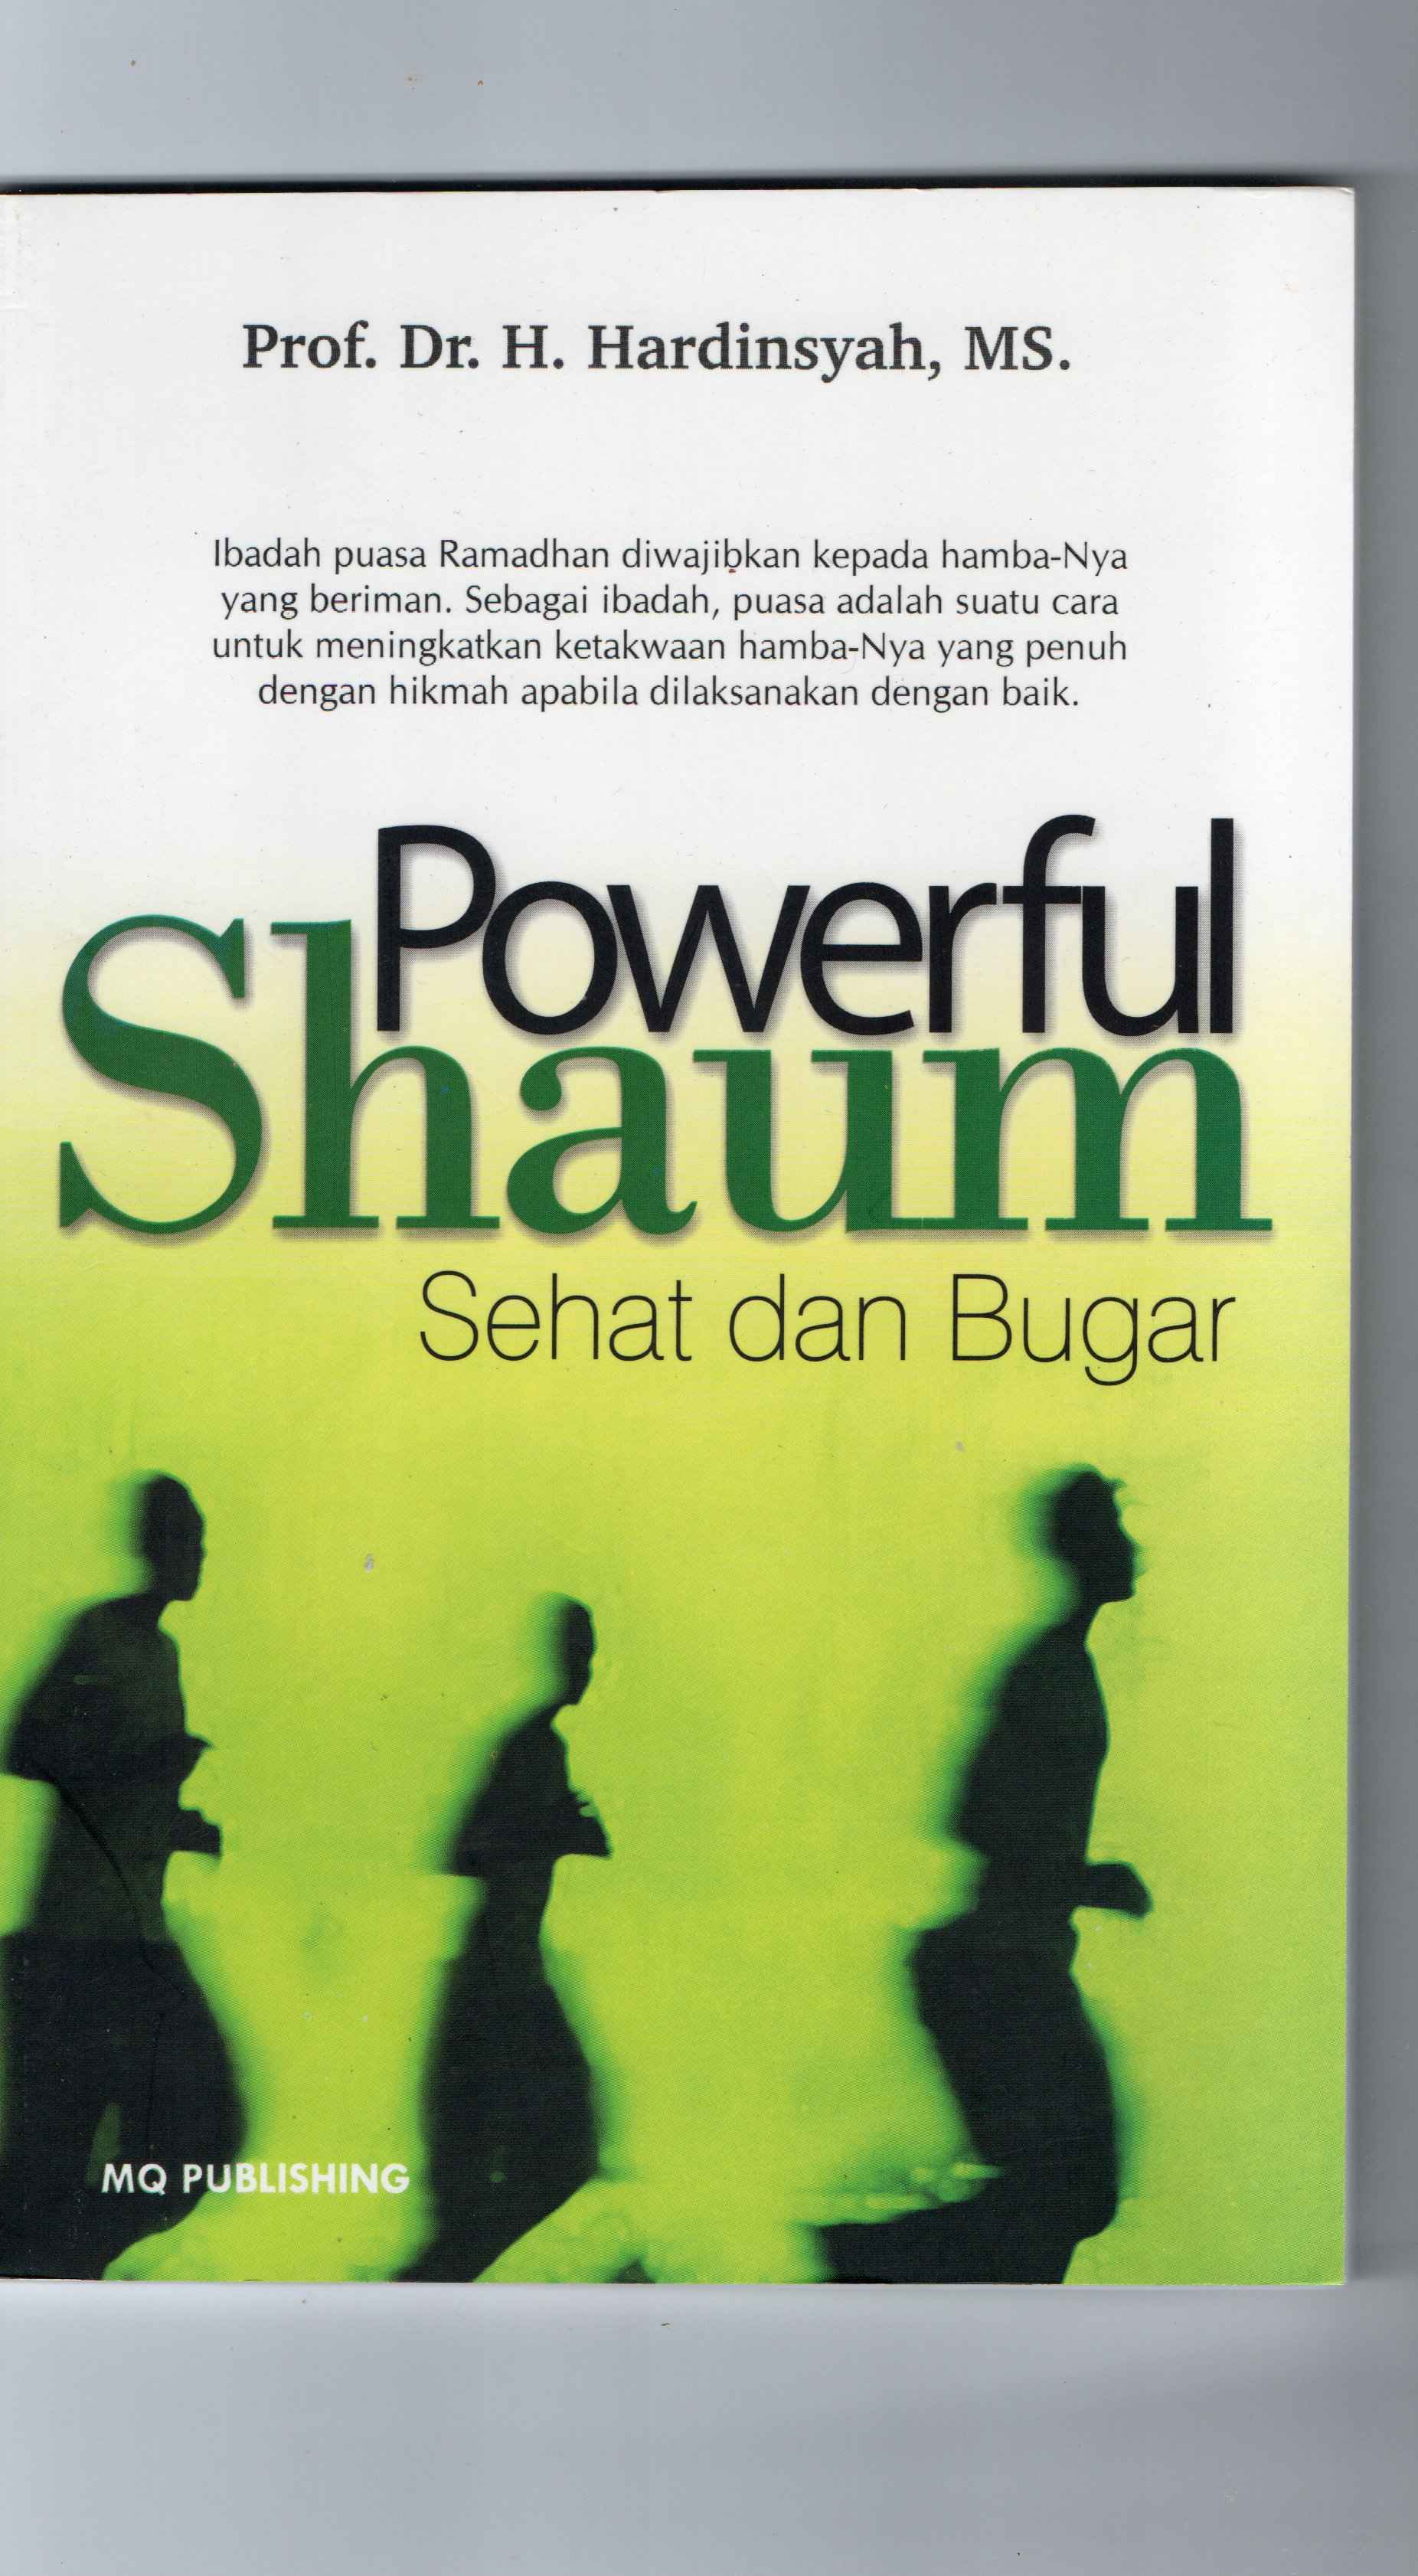 Powerful Shaum sehat dan bugar